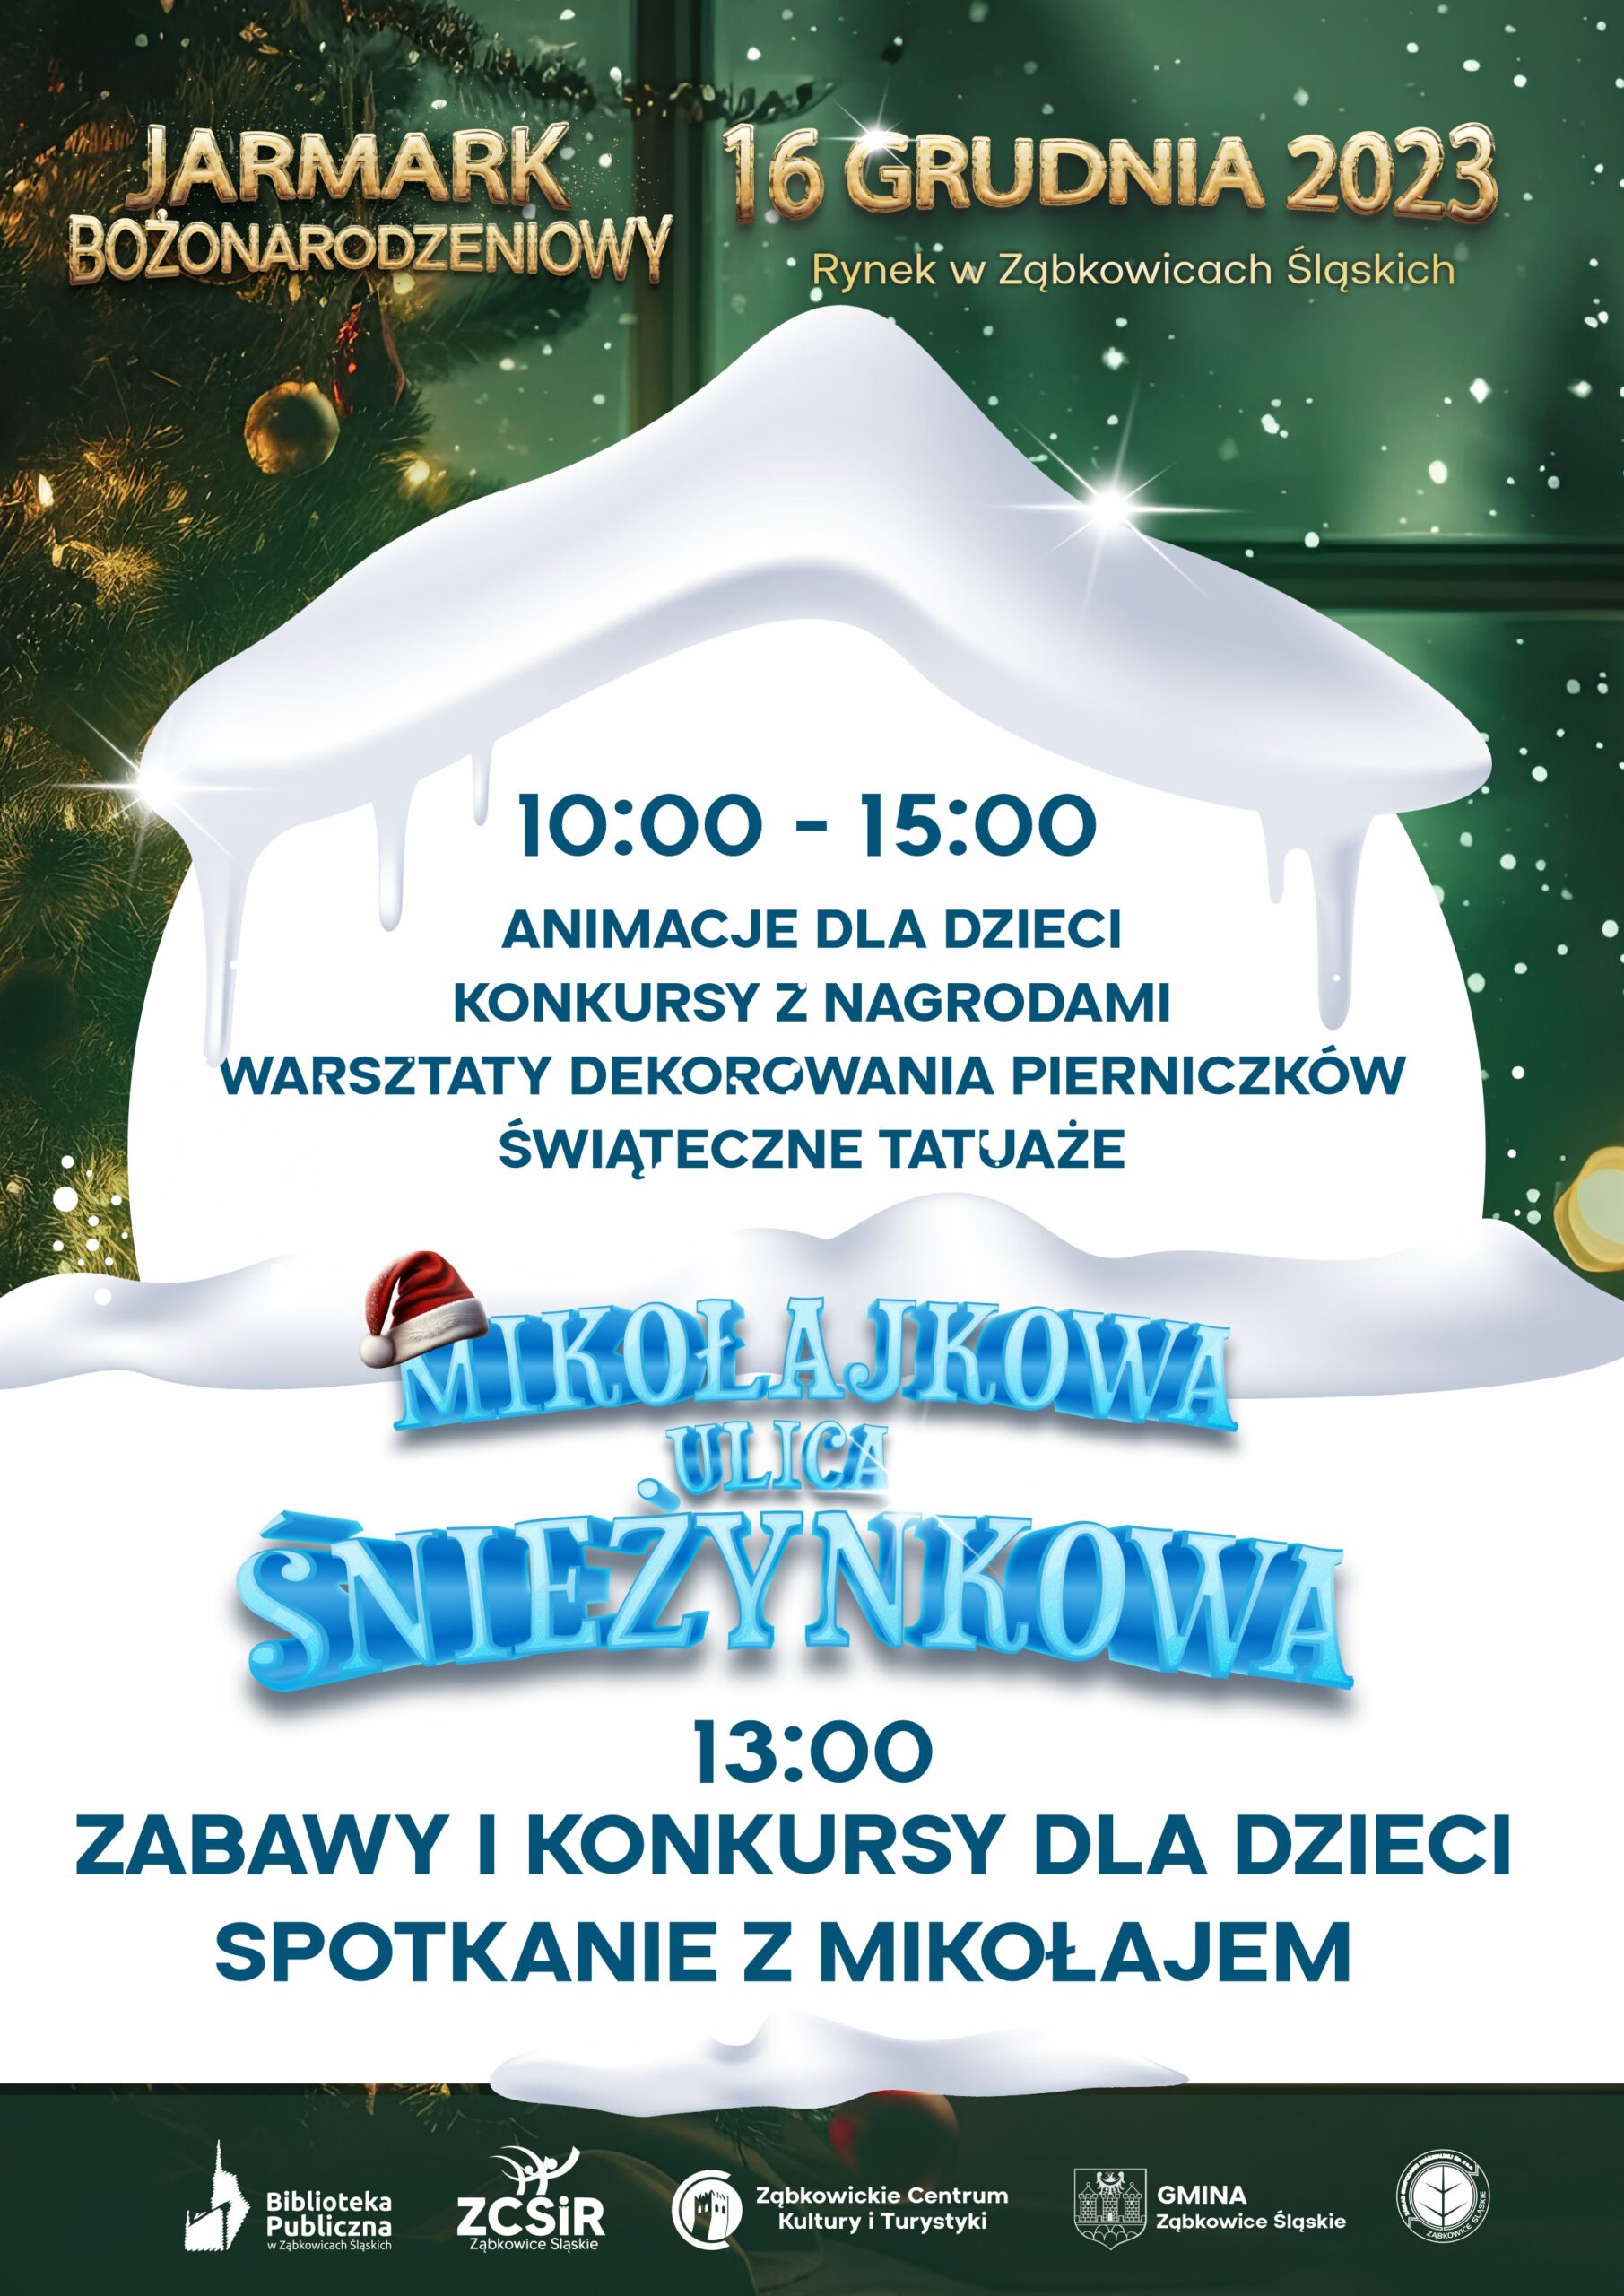 Plakat informacyjny o zajęciach dla dzieci "Mikołajkowa ulica Śnieżynkowa" 16 grudnia 2023 w Ząbkowicach Śląskich.